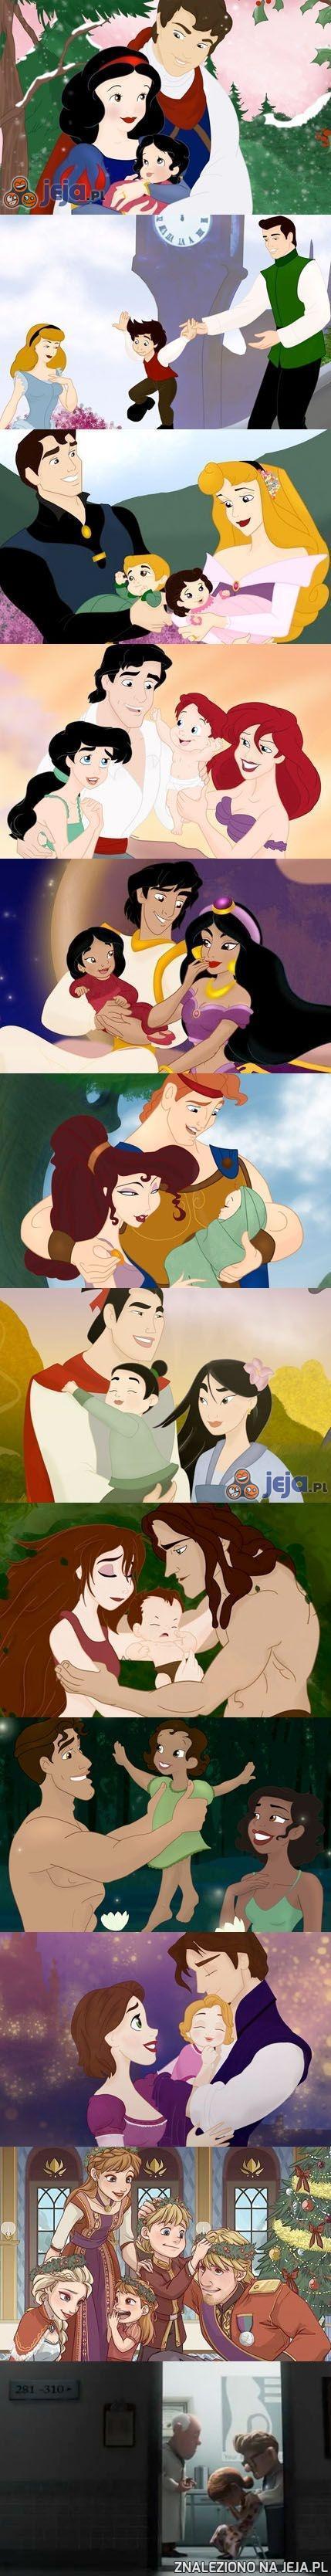 Rodzicielstwo w Disneyu